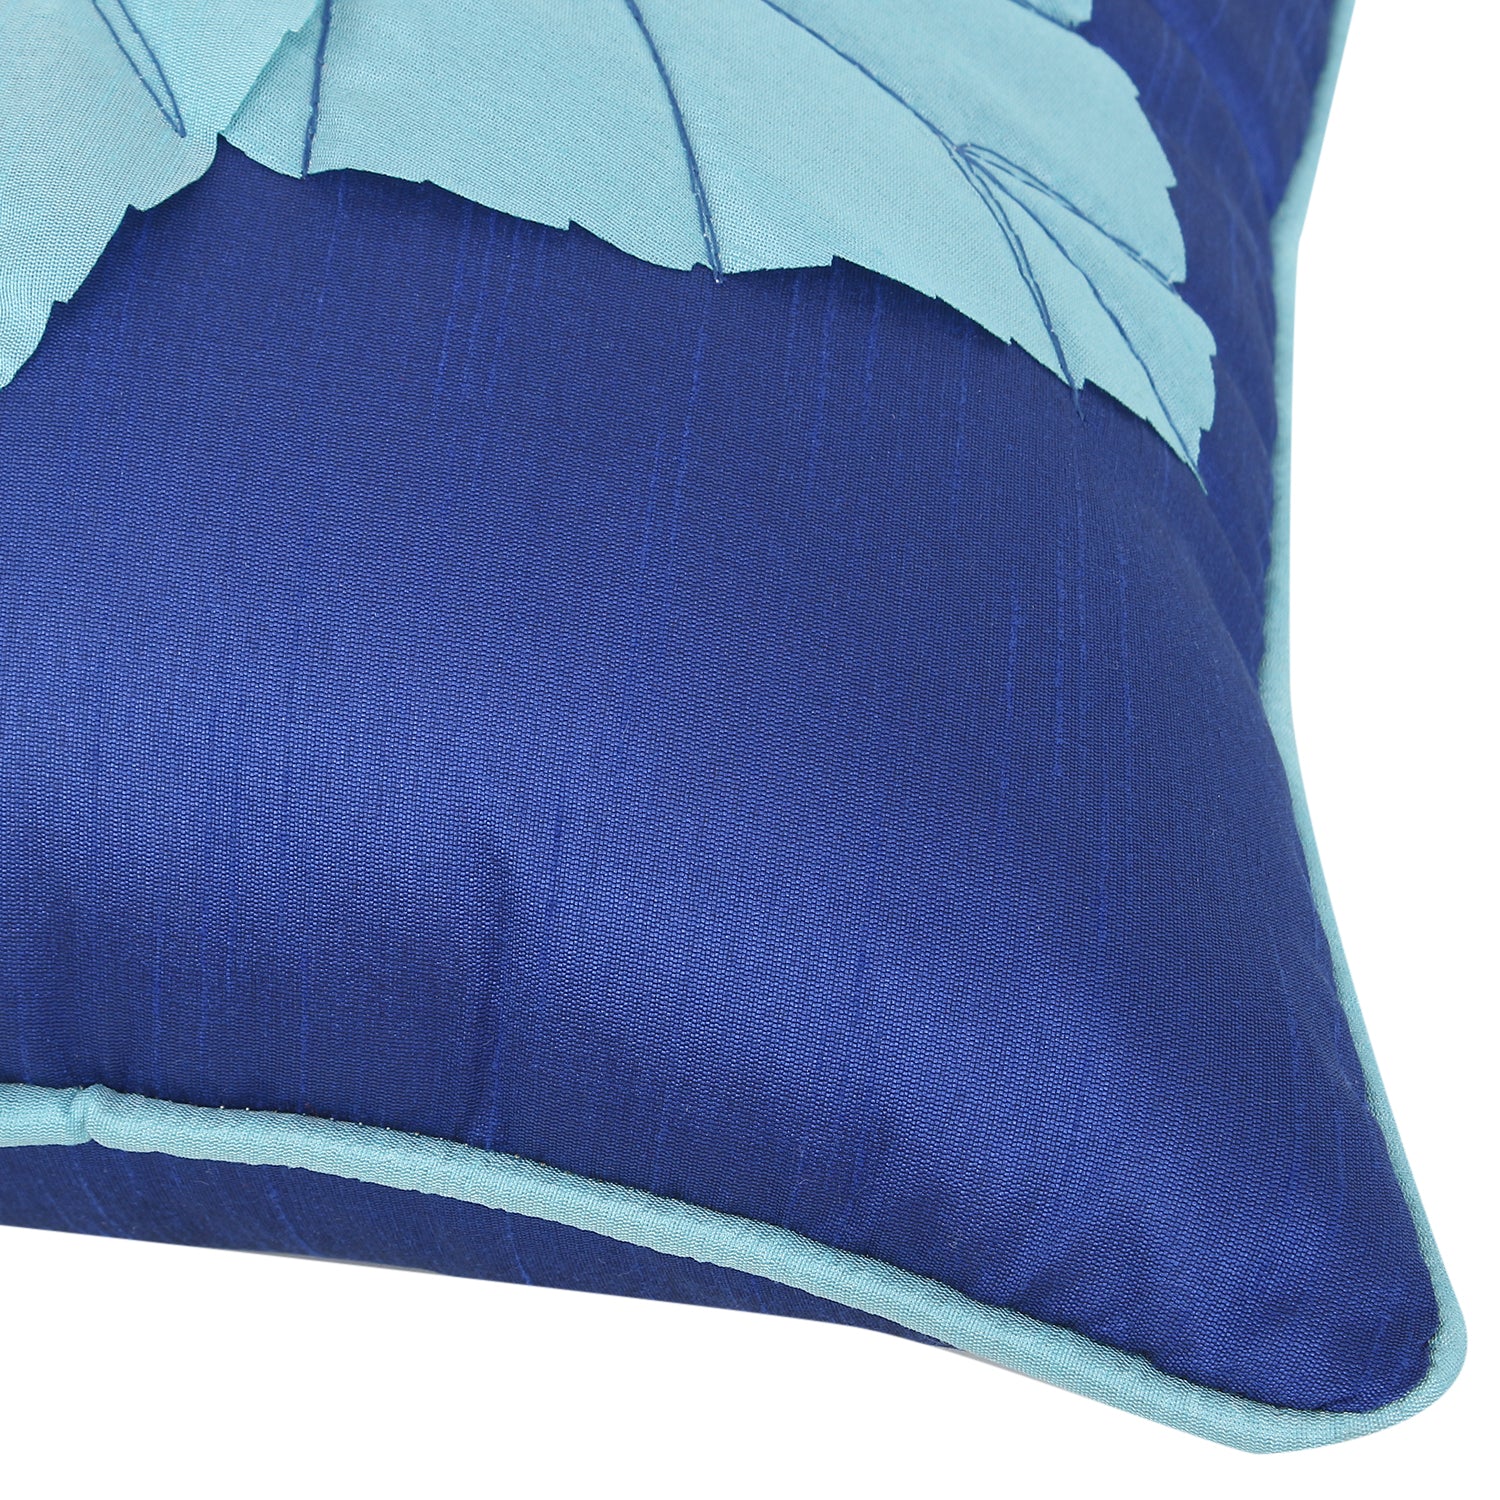 Desi Kapda Printed Cushions & Pillows Cover